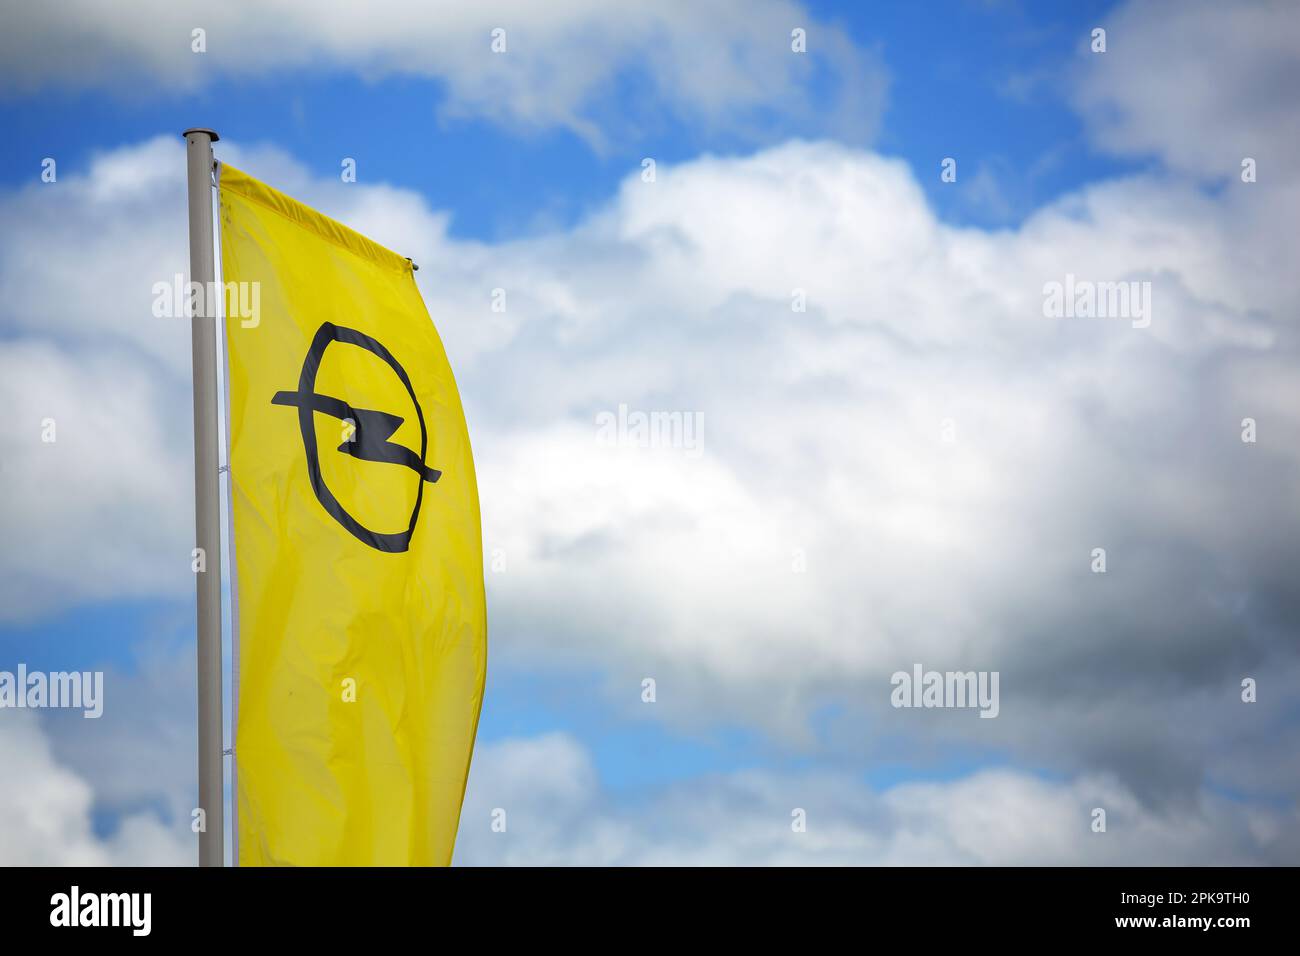 30.04.2018, Alemania, Saarland, Voelklingen - bandera de Opel. 00A180430D119CAROEX.JPG [VERSIÓN MODELO: NO APLICABLE, VERSIÓN PROPIEDAD: NO (c) caro imágenes / Foto de stock